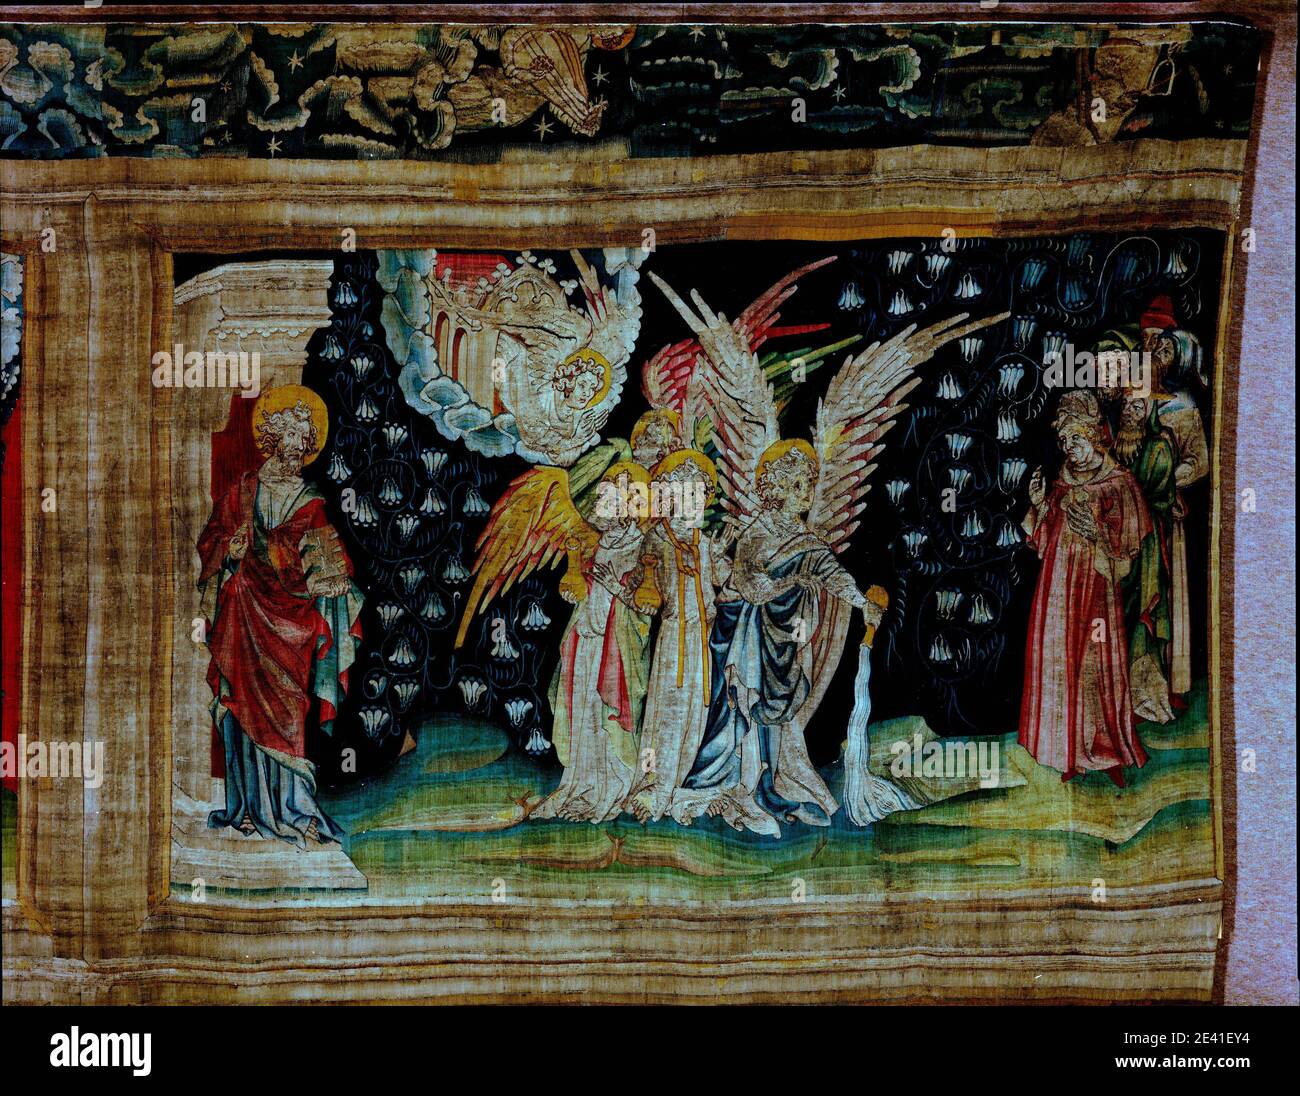 La Tenture de l'Apocalypse d'Angers, Le Premier flacon versé sur la terre (1,52 x 2,44 m), der erste Engel gibt die Schale aus auf die Erde Stockfoto